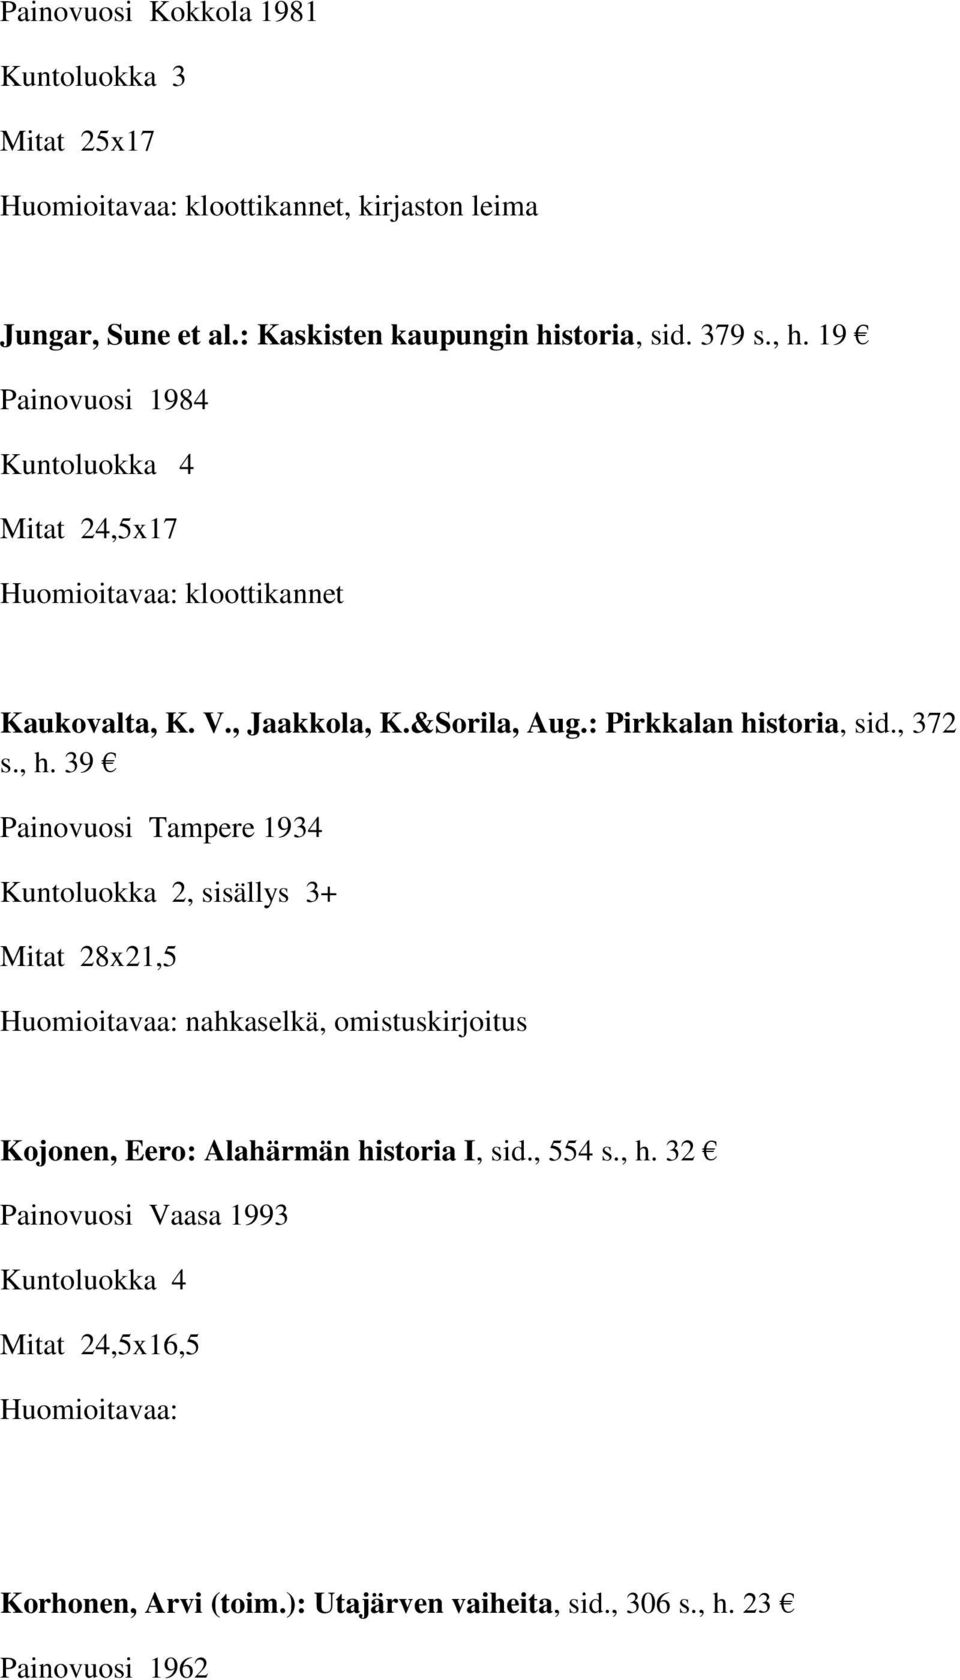 39 Painovuosi Tampere 1934 Kuntoluokka 2, sisällys 3+ Mitat 28x21,5 Huomioitavaa: nahkaselkä, omistuskirjoitus Kojonen, Eero: